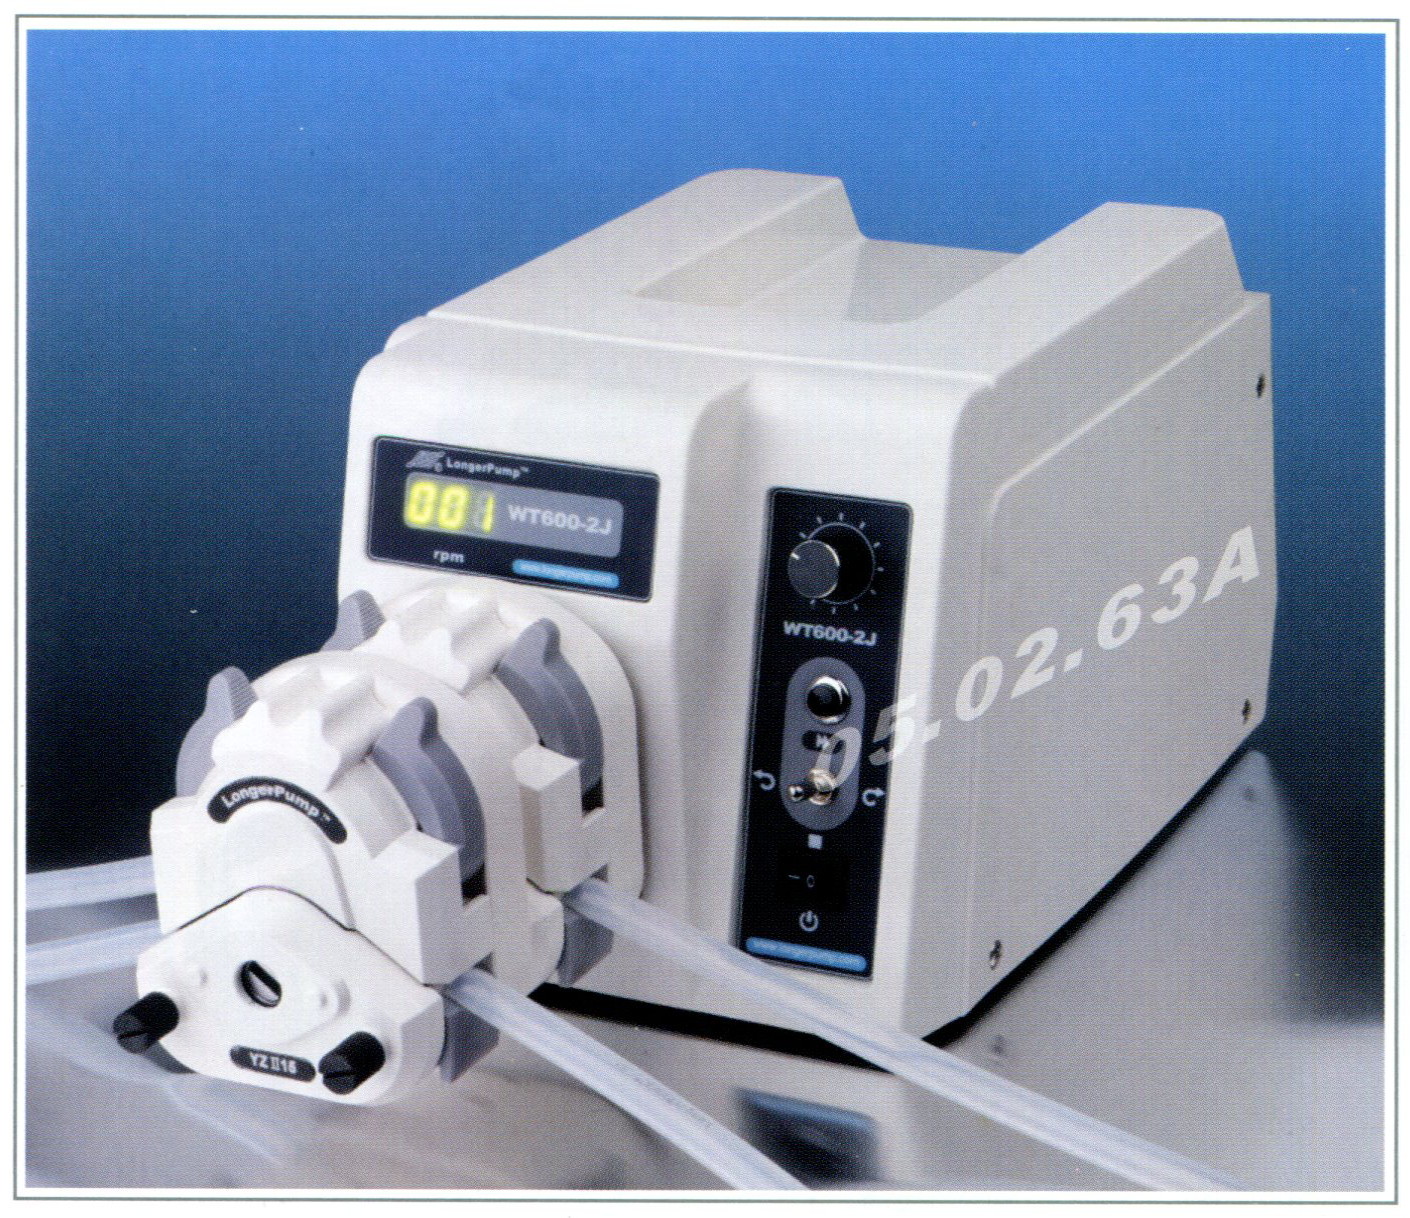 longer pump, peristaltic pump, WT600-2J